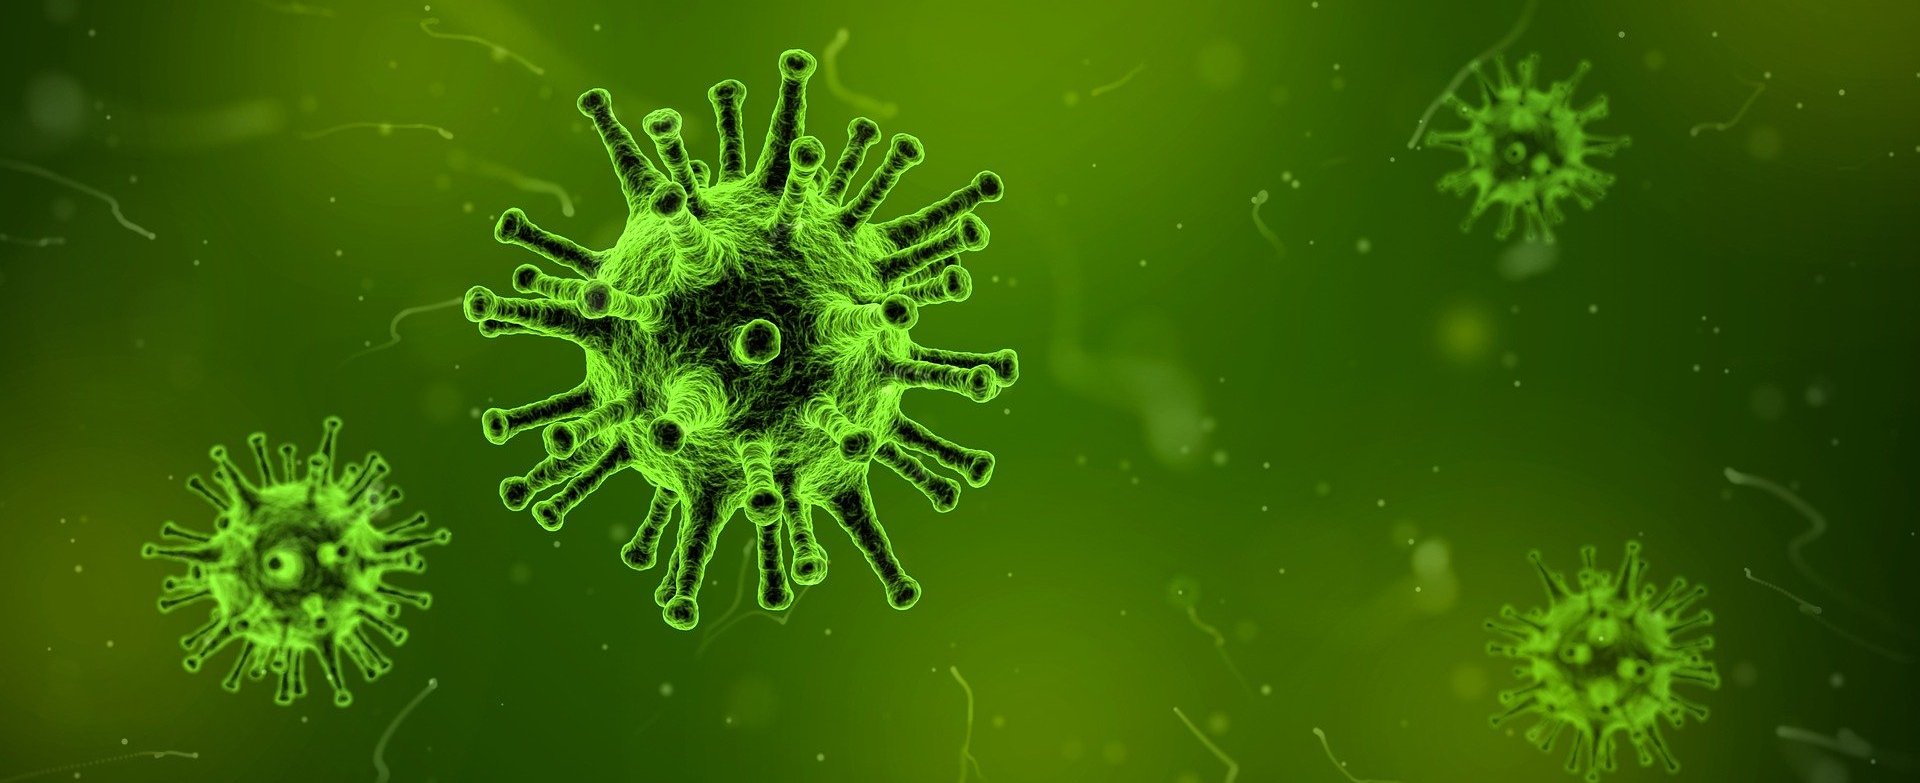 Grüne Darstellung, welches ein Virus abbildet.